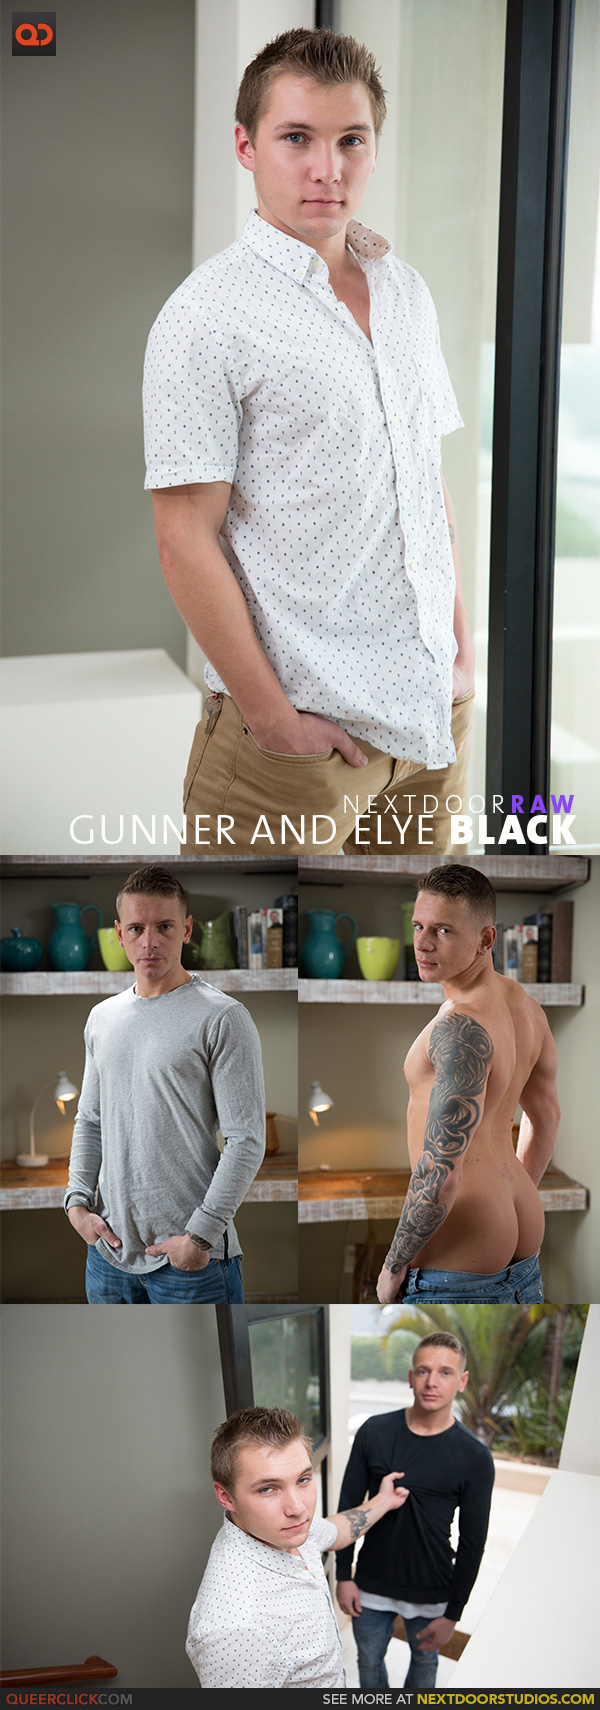 Next Door Studios:  Gunner and Elye Black